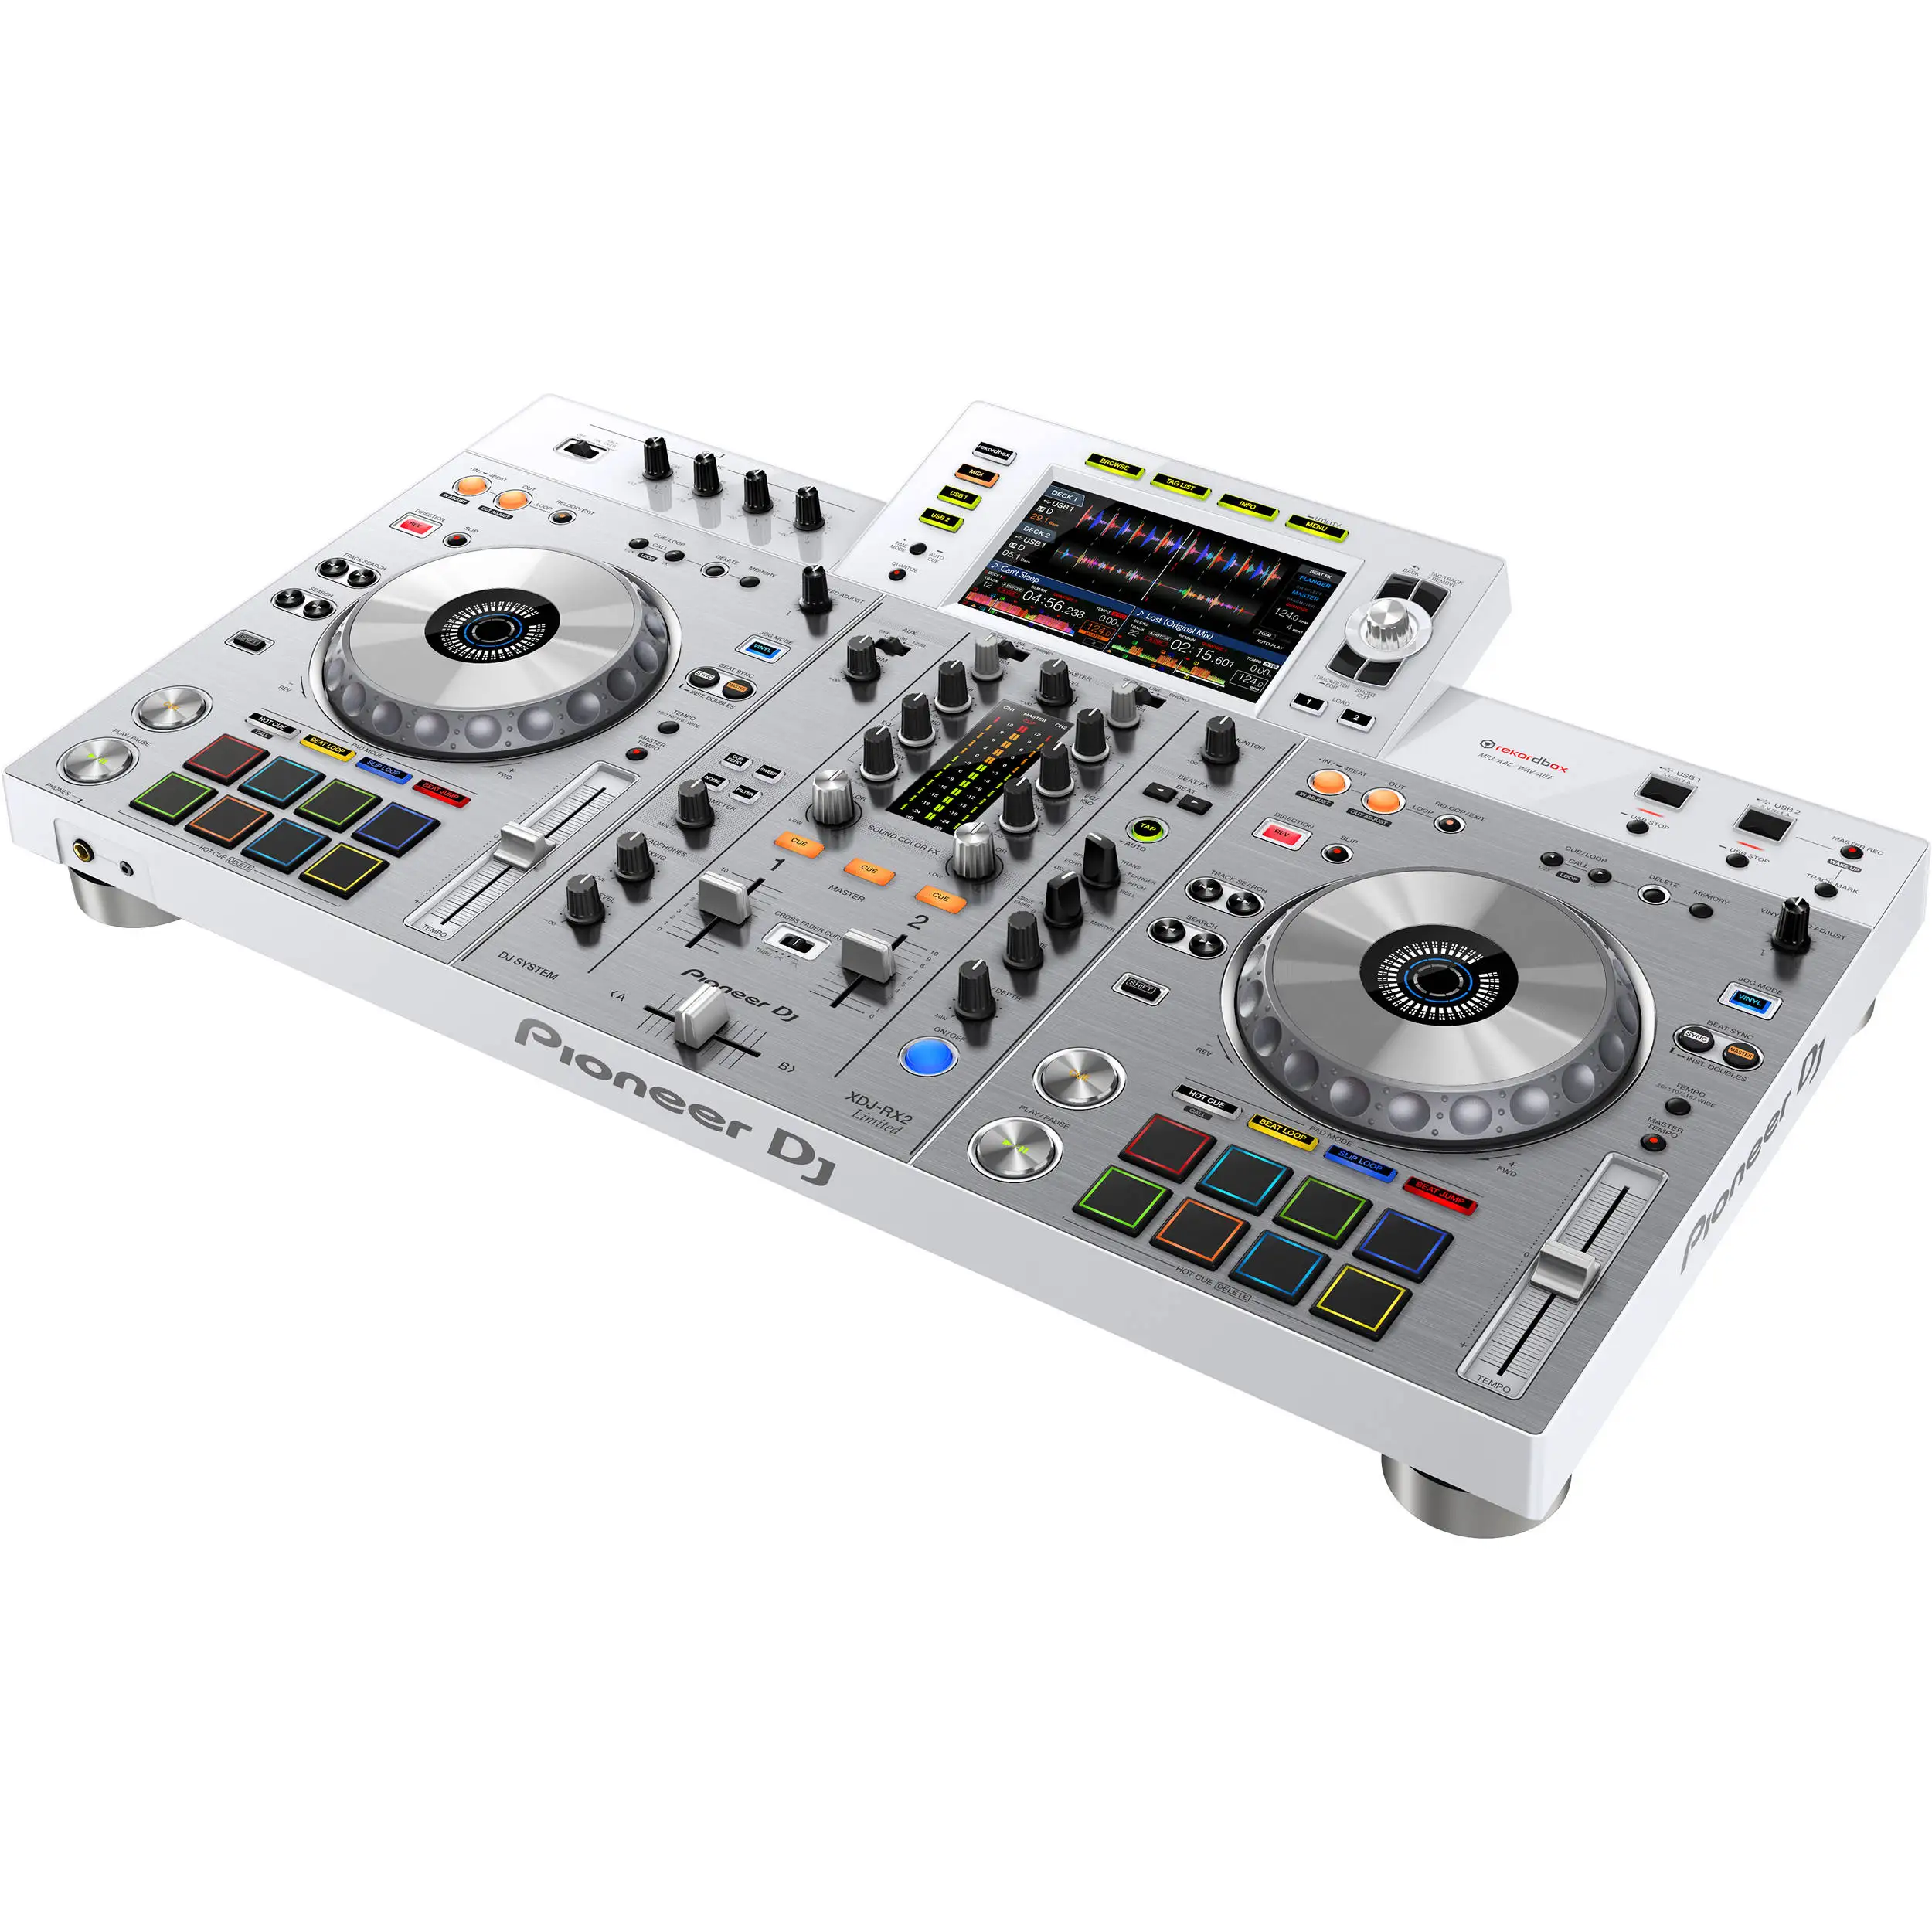 Летняя распродажа скидка 100% со скидкой Pioneer DJ XDJ-RX2-W интегрированная DJ система микшер музыкальный инструмент